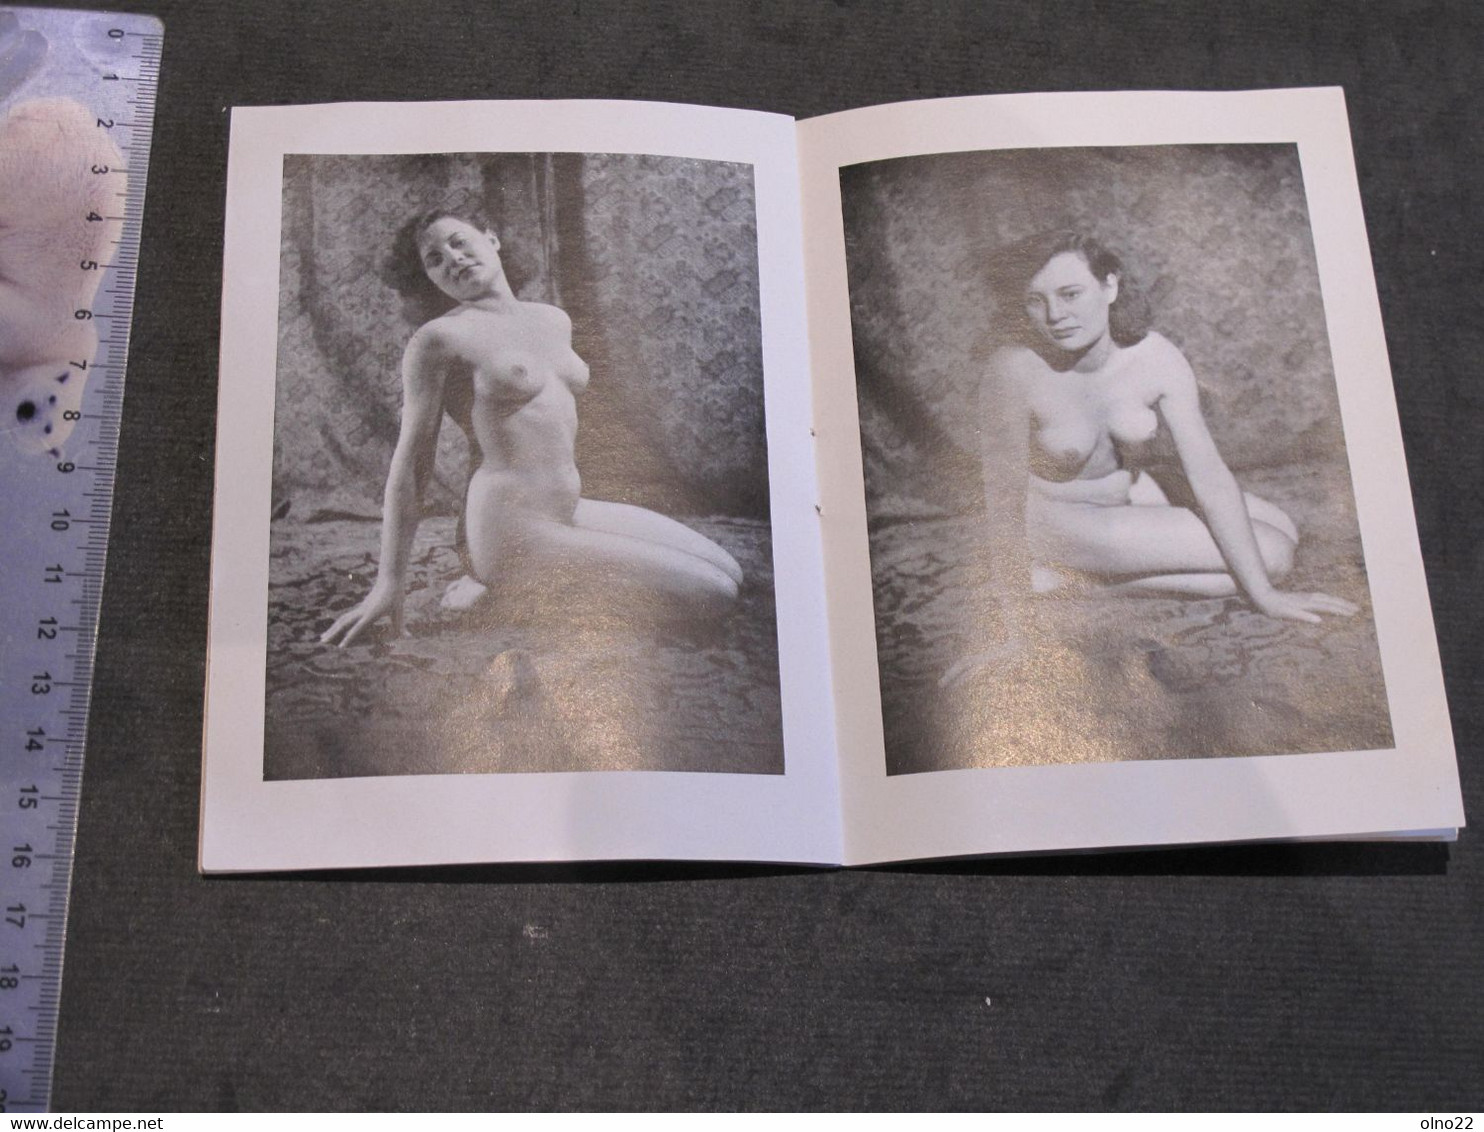 HARMONIE - CAMERA BIELD KIEL - PETIT RECUEIL DE 15 PHOTOS N/B DE NUS FEMININS EDITION ALLEMANDE - CIRCA ANNEES 50 - Fotografía